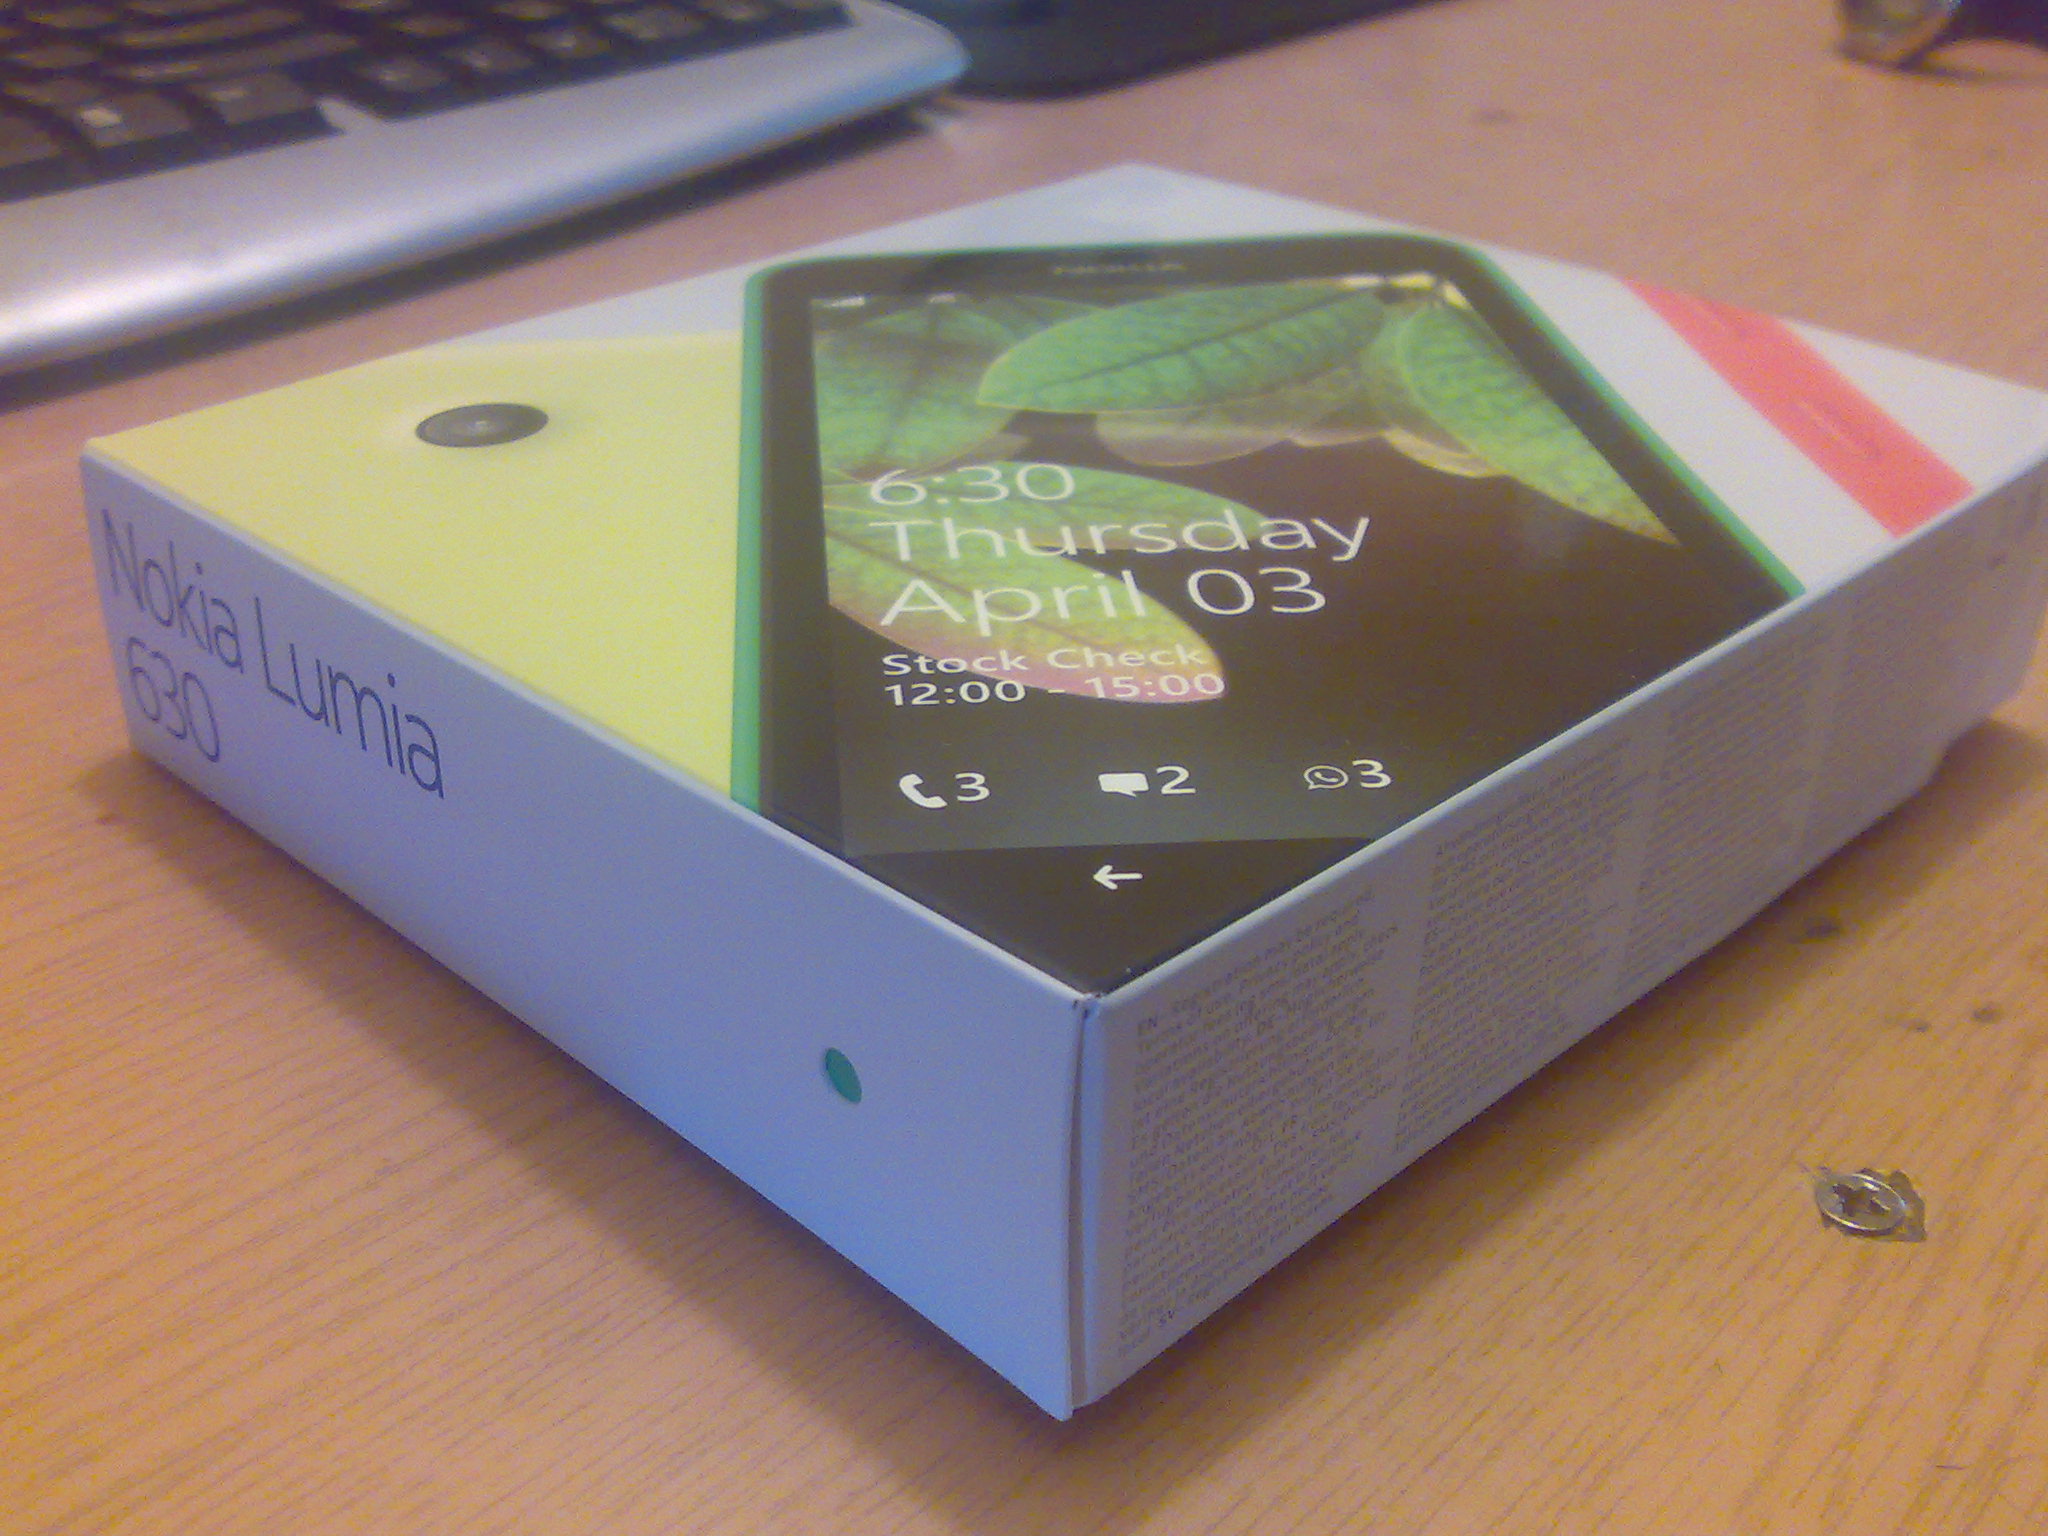 Nokia LUMIA 630 4 цвета глубина продукта 9 мм